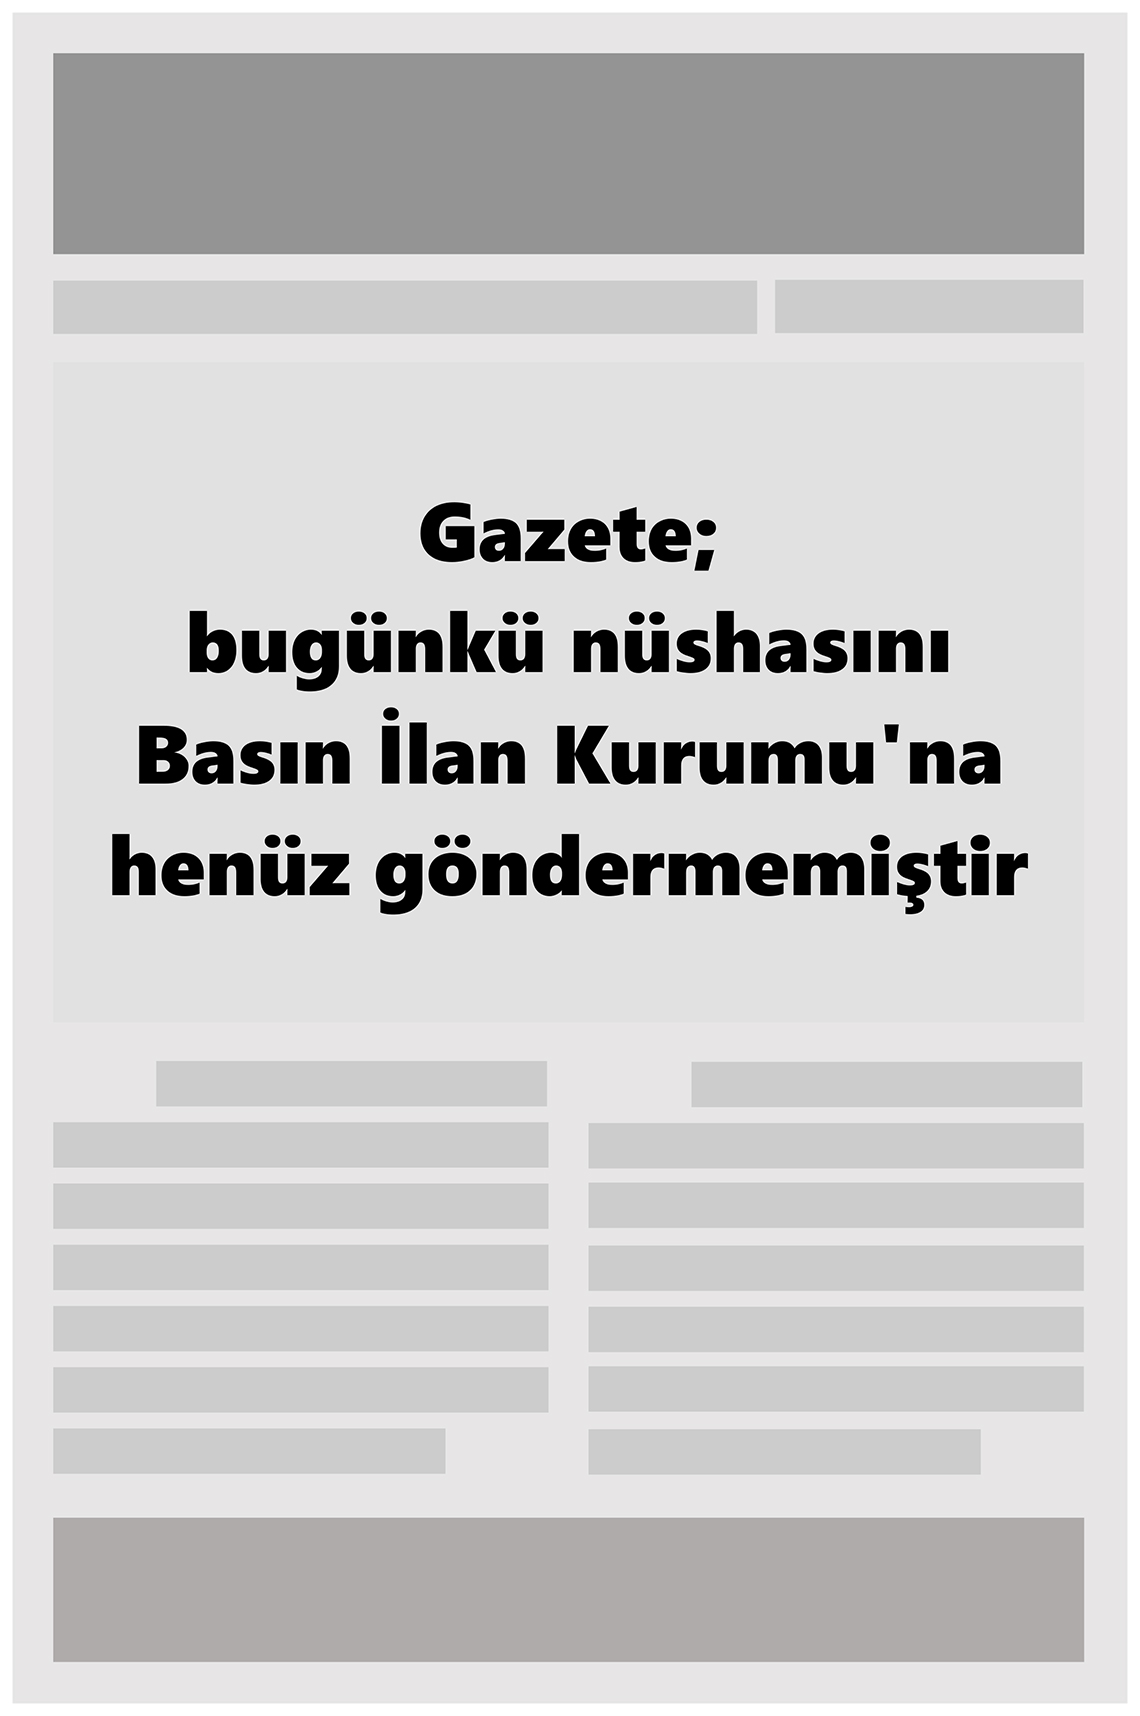 Güçlü Anadolu Gazete Manşeti